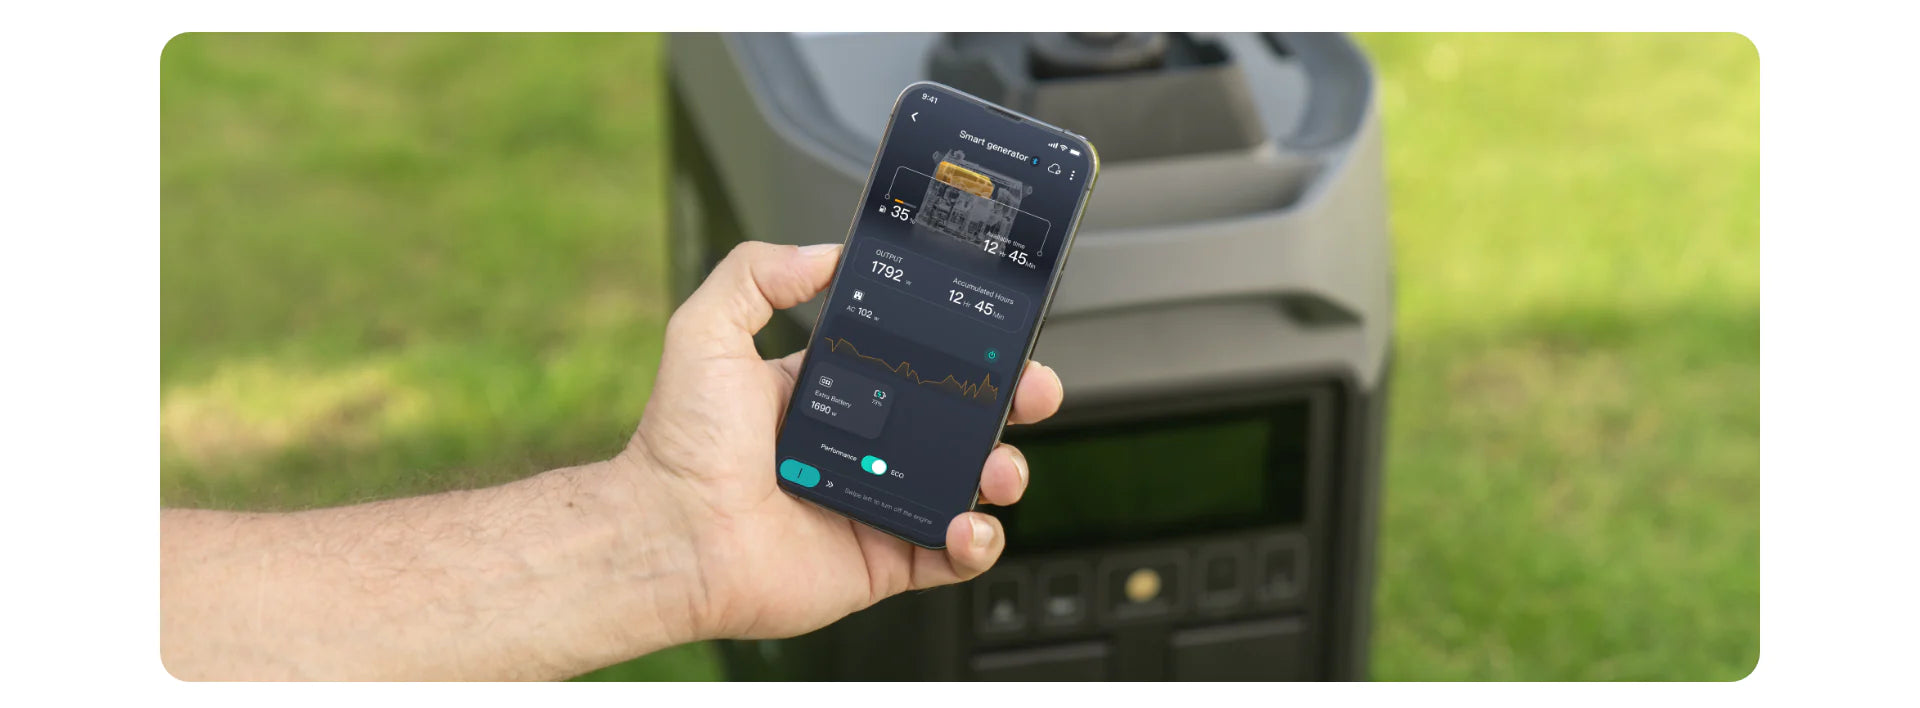 EcoFlow Smart Generator (Dual Fuel) Smart Phone App